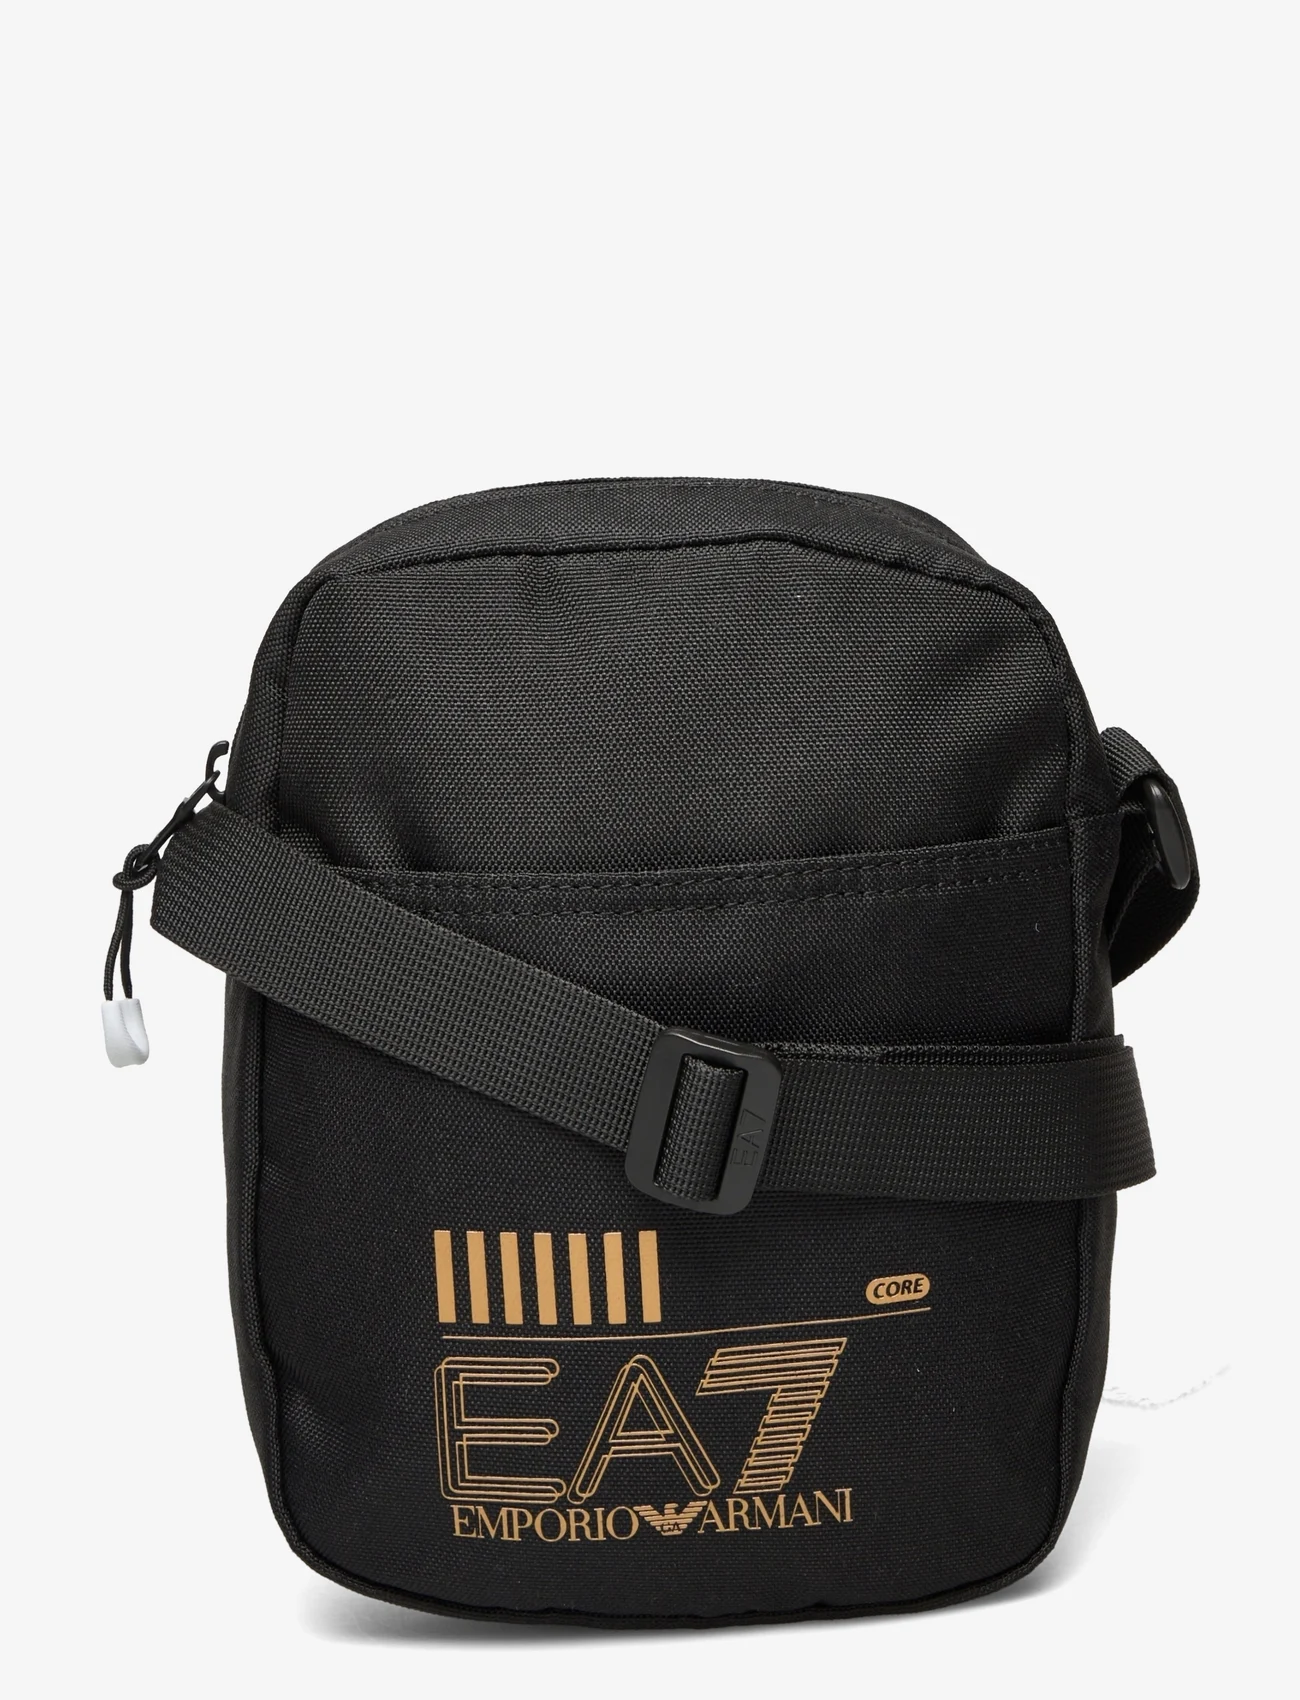 EA7 - MAN'S POUCH BAG - men - 26121-black/gold logo - 0